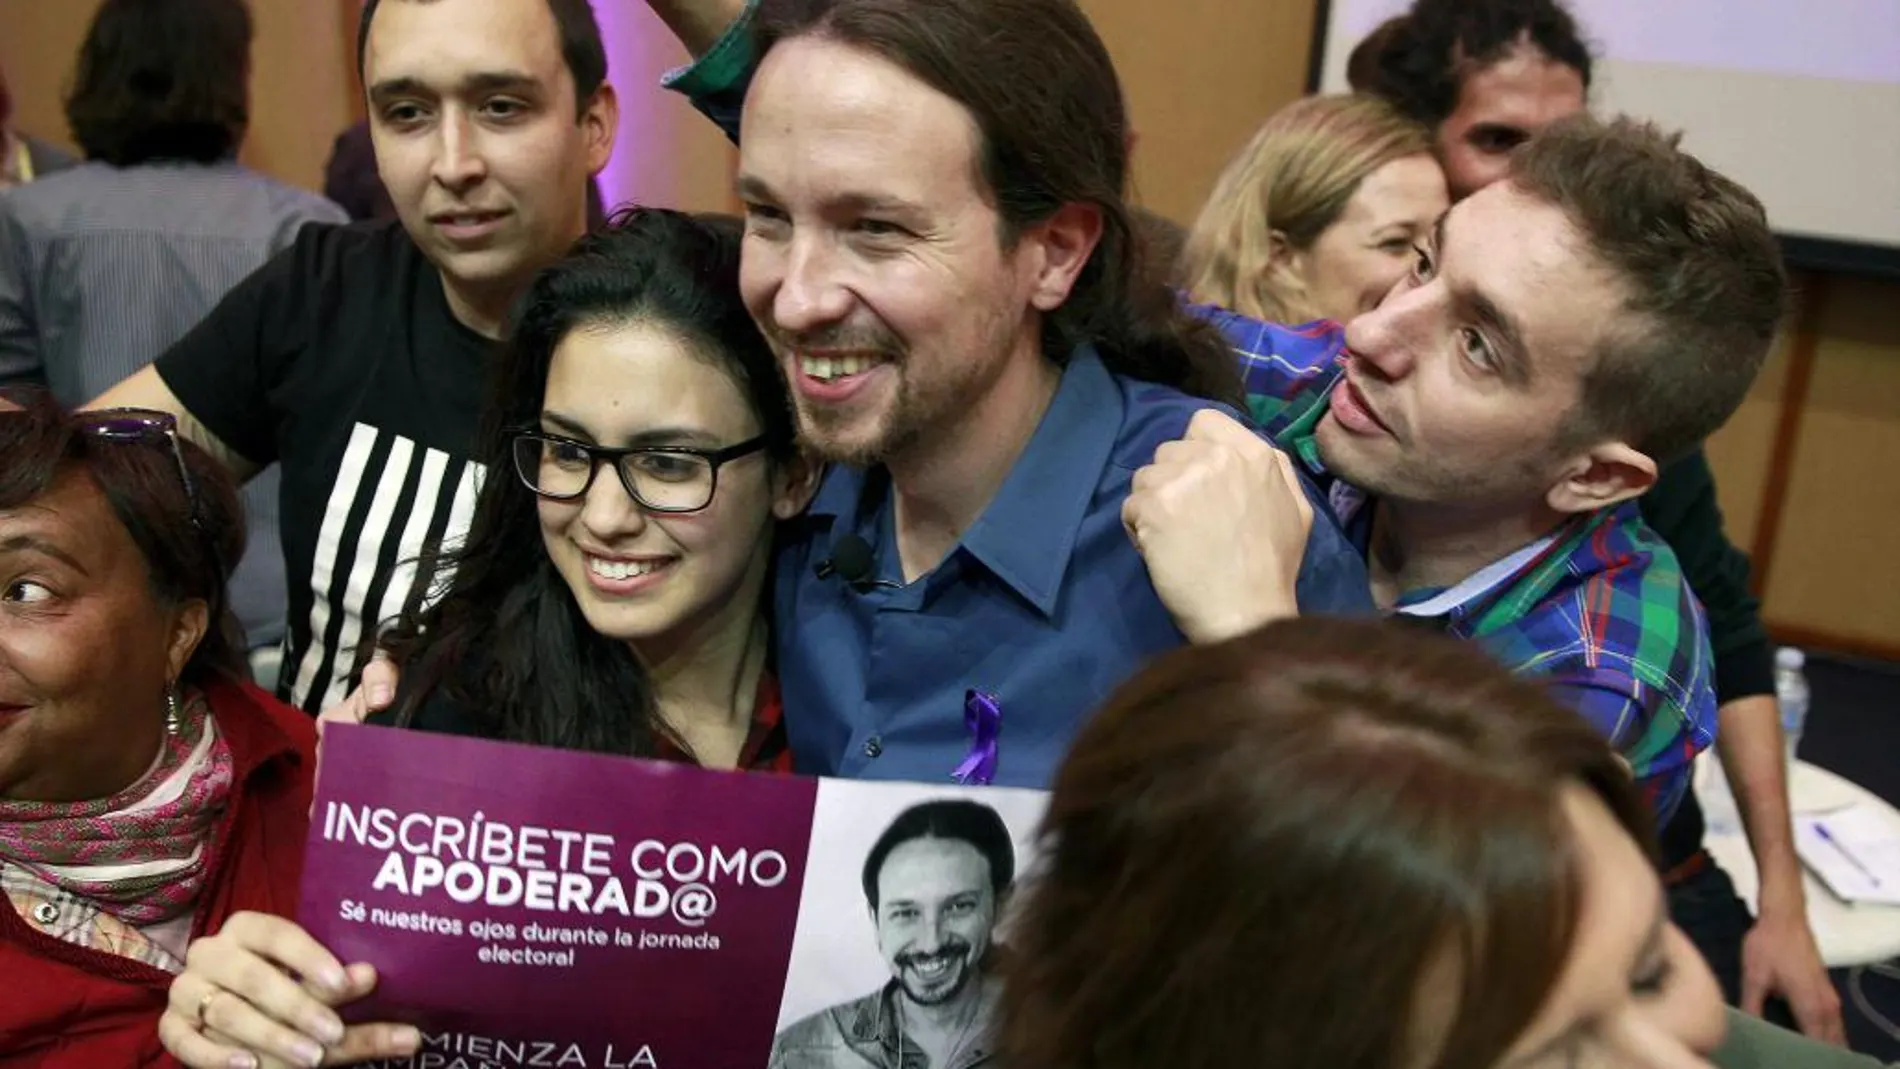 El candidato a la Presidencia del Gobierno de Podemos, Pablo Iglesias, posa hoy con algunos de los participantes del acto electoral de la Universidad de La Laguna